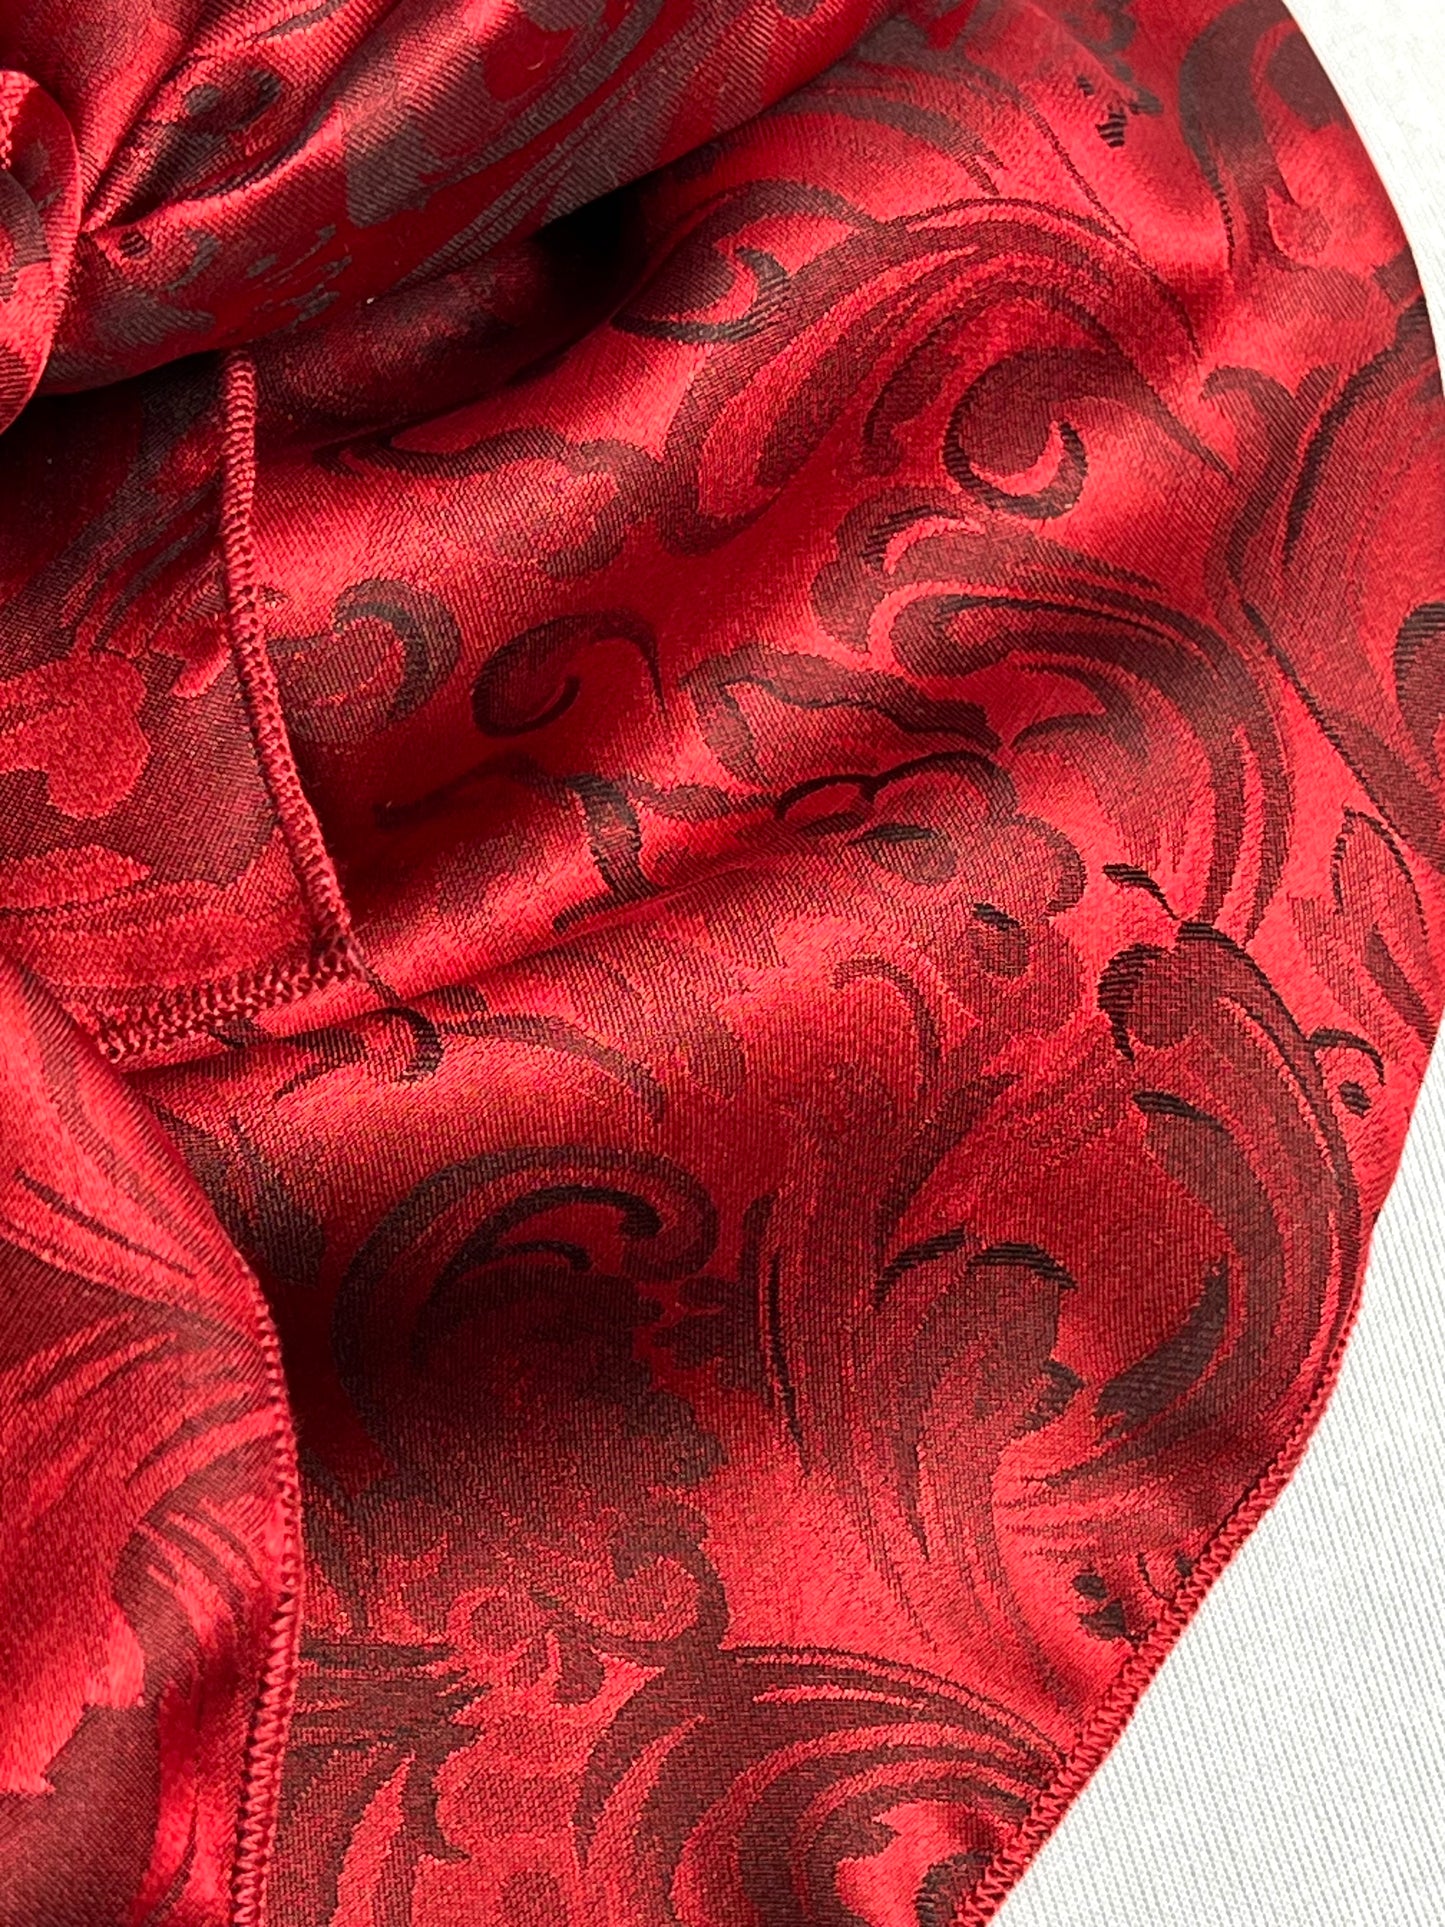 
                  
                    Scarlet Red Silk Jacquard Large Rag
                  
                